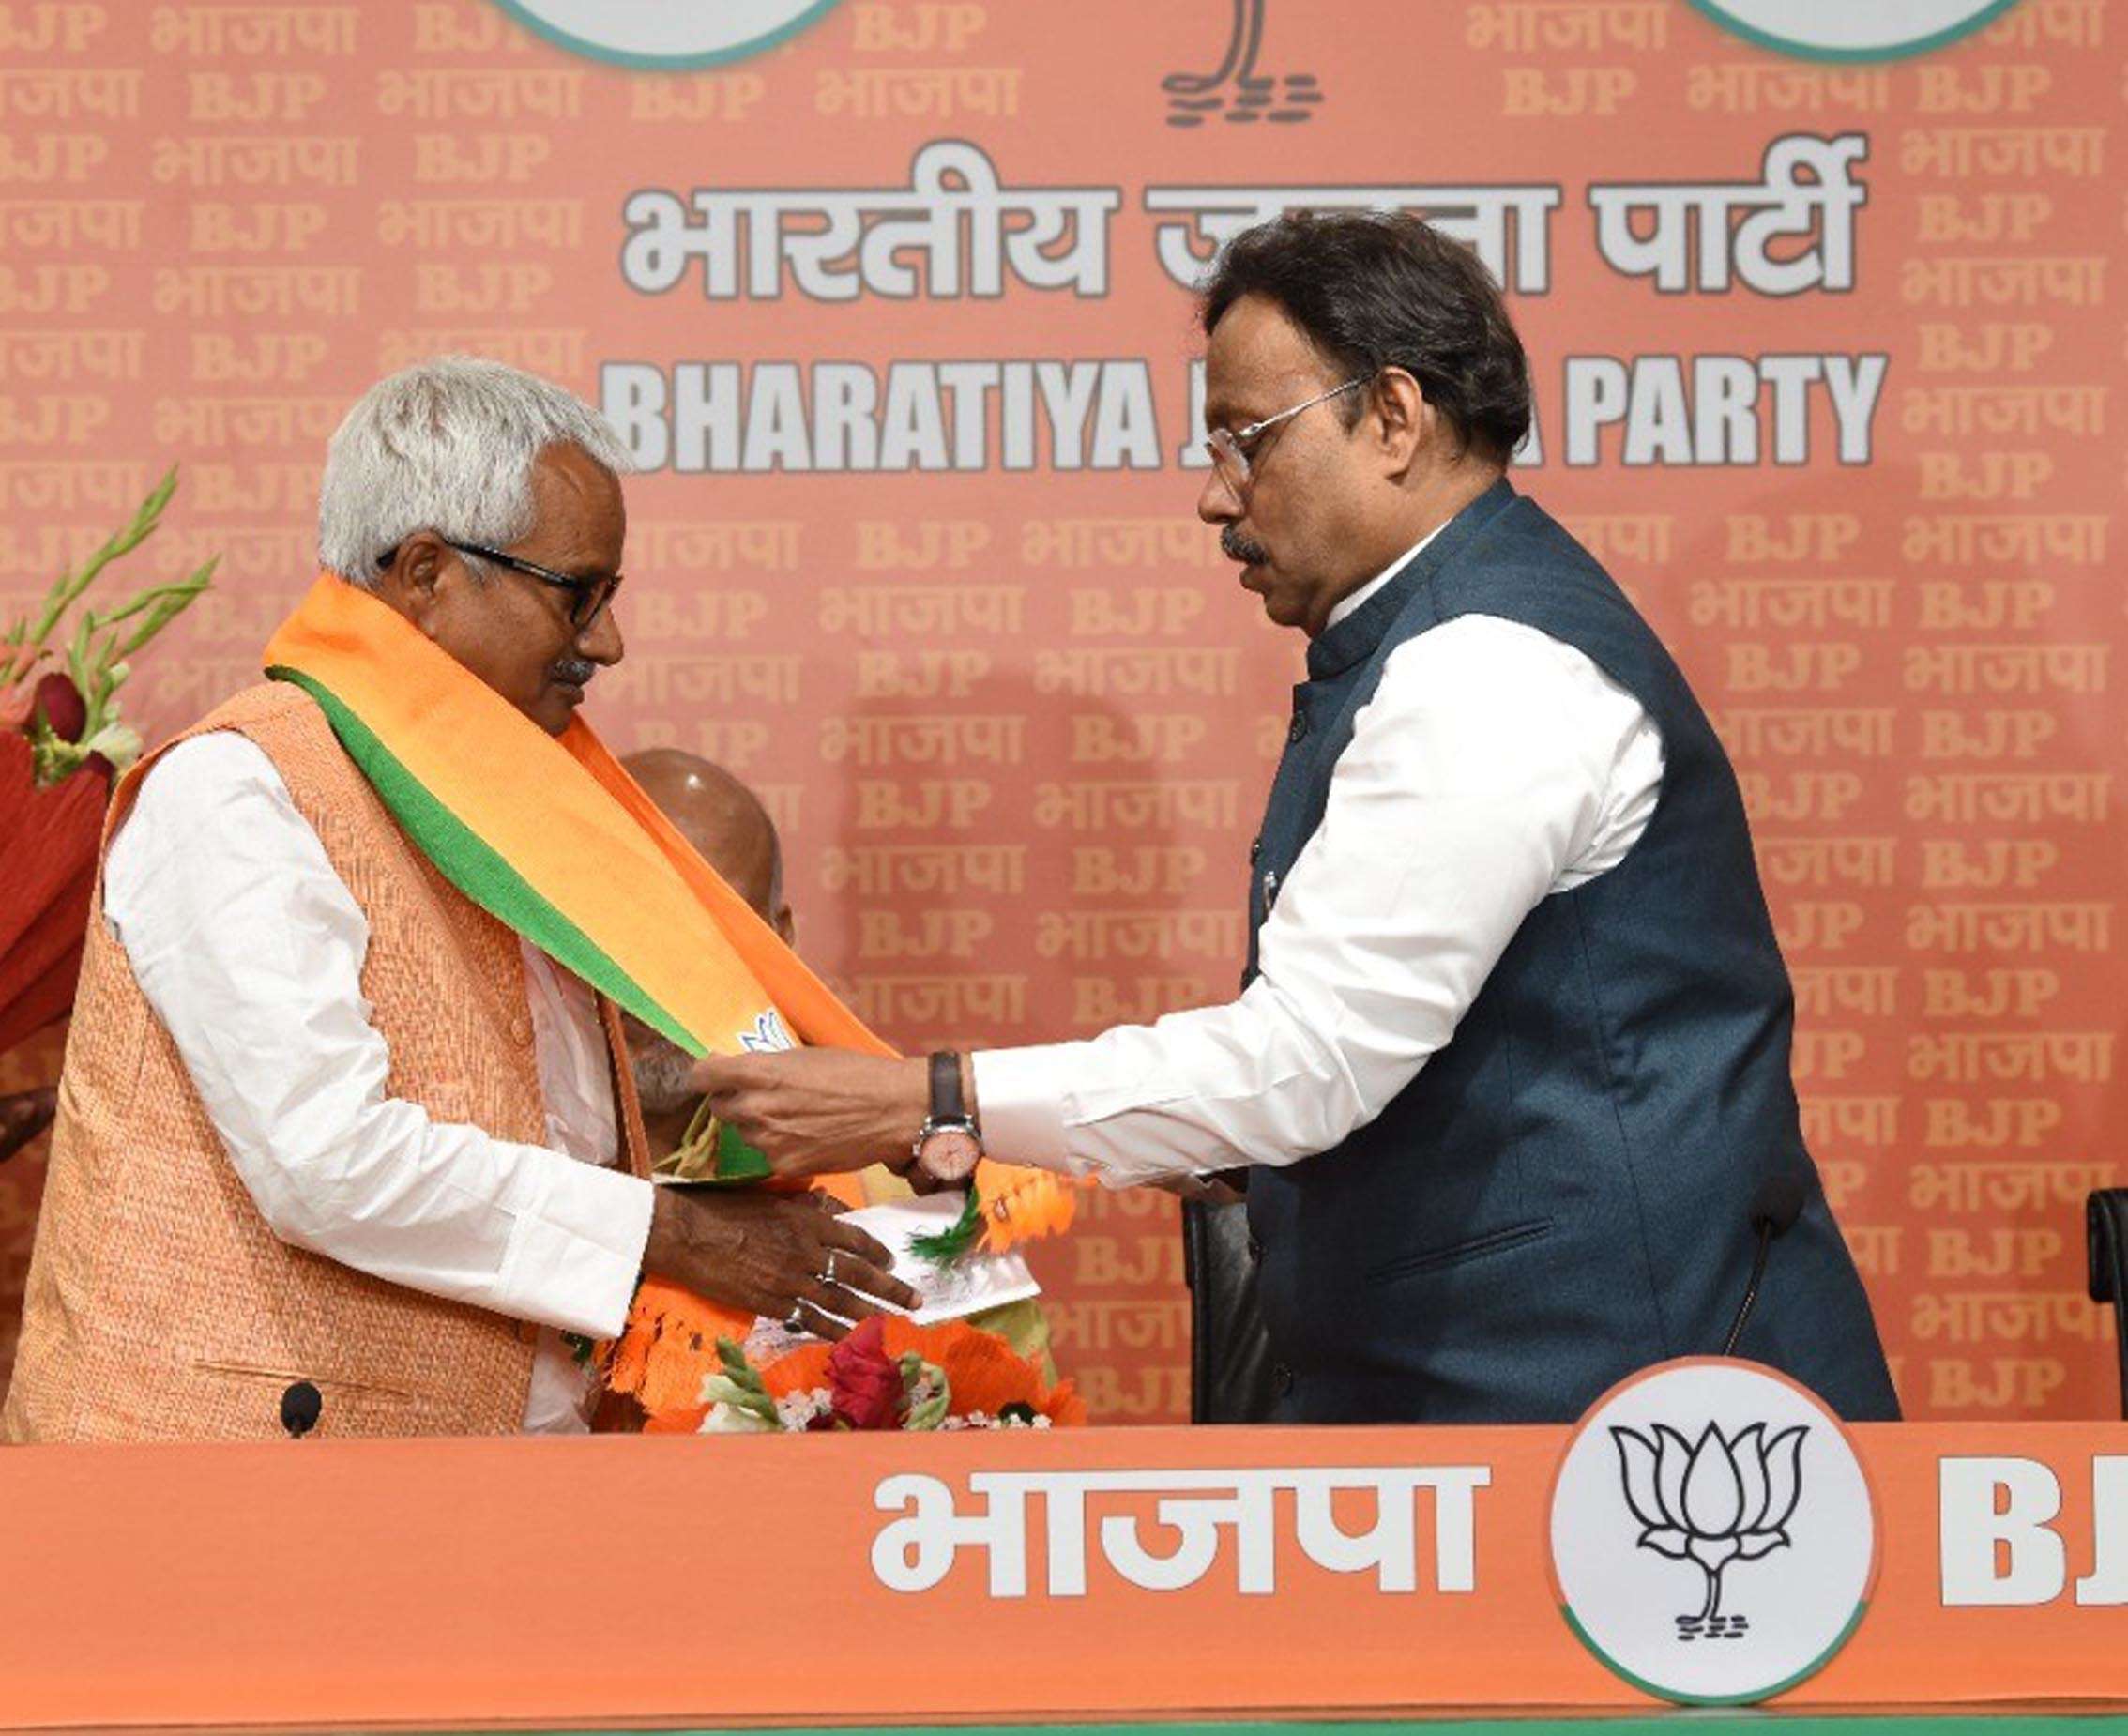 बीजेपी महासचिव विनोद तावड़े की मौजूदगी में कांग्रेस नेता गौरव वल्लभ,अनिल शर्मा और पूर्व राजद नेता उपेंद्र प्रसाद बीजेपी में शामिल हो गए।